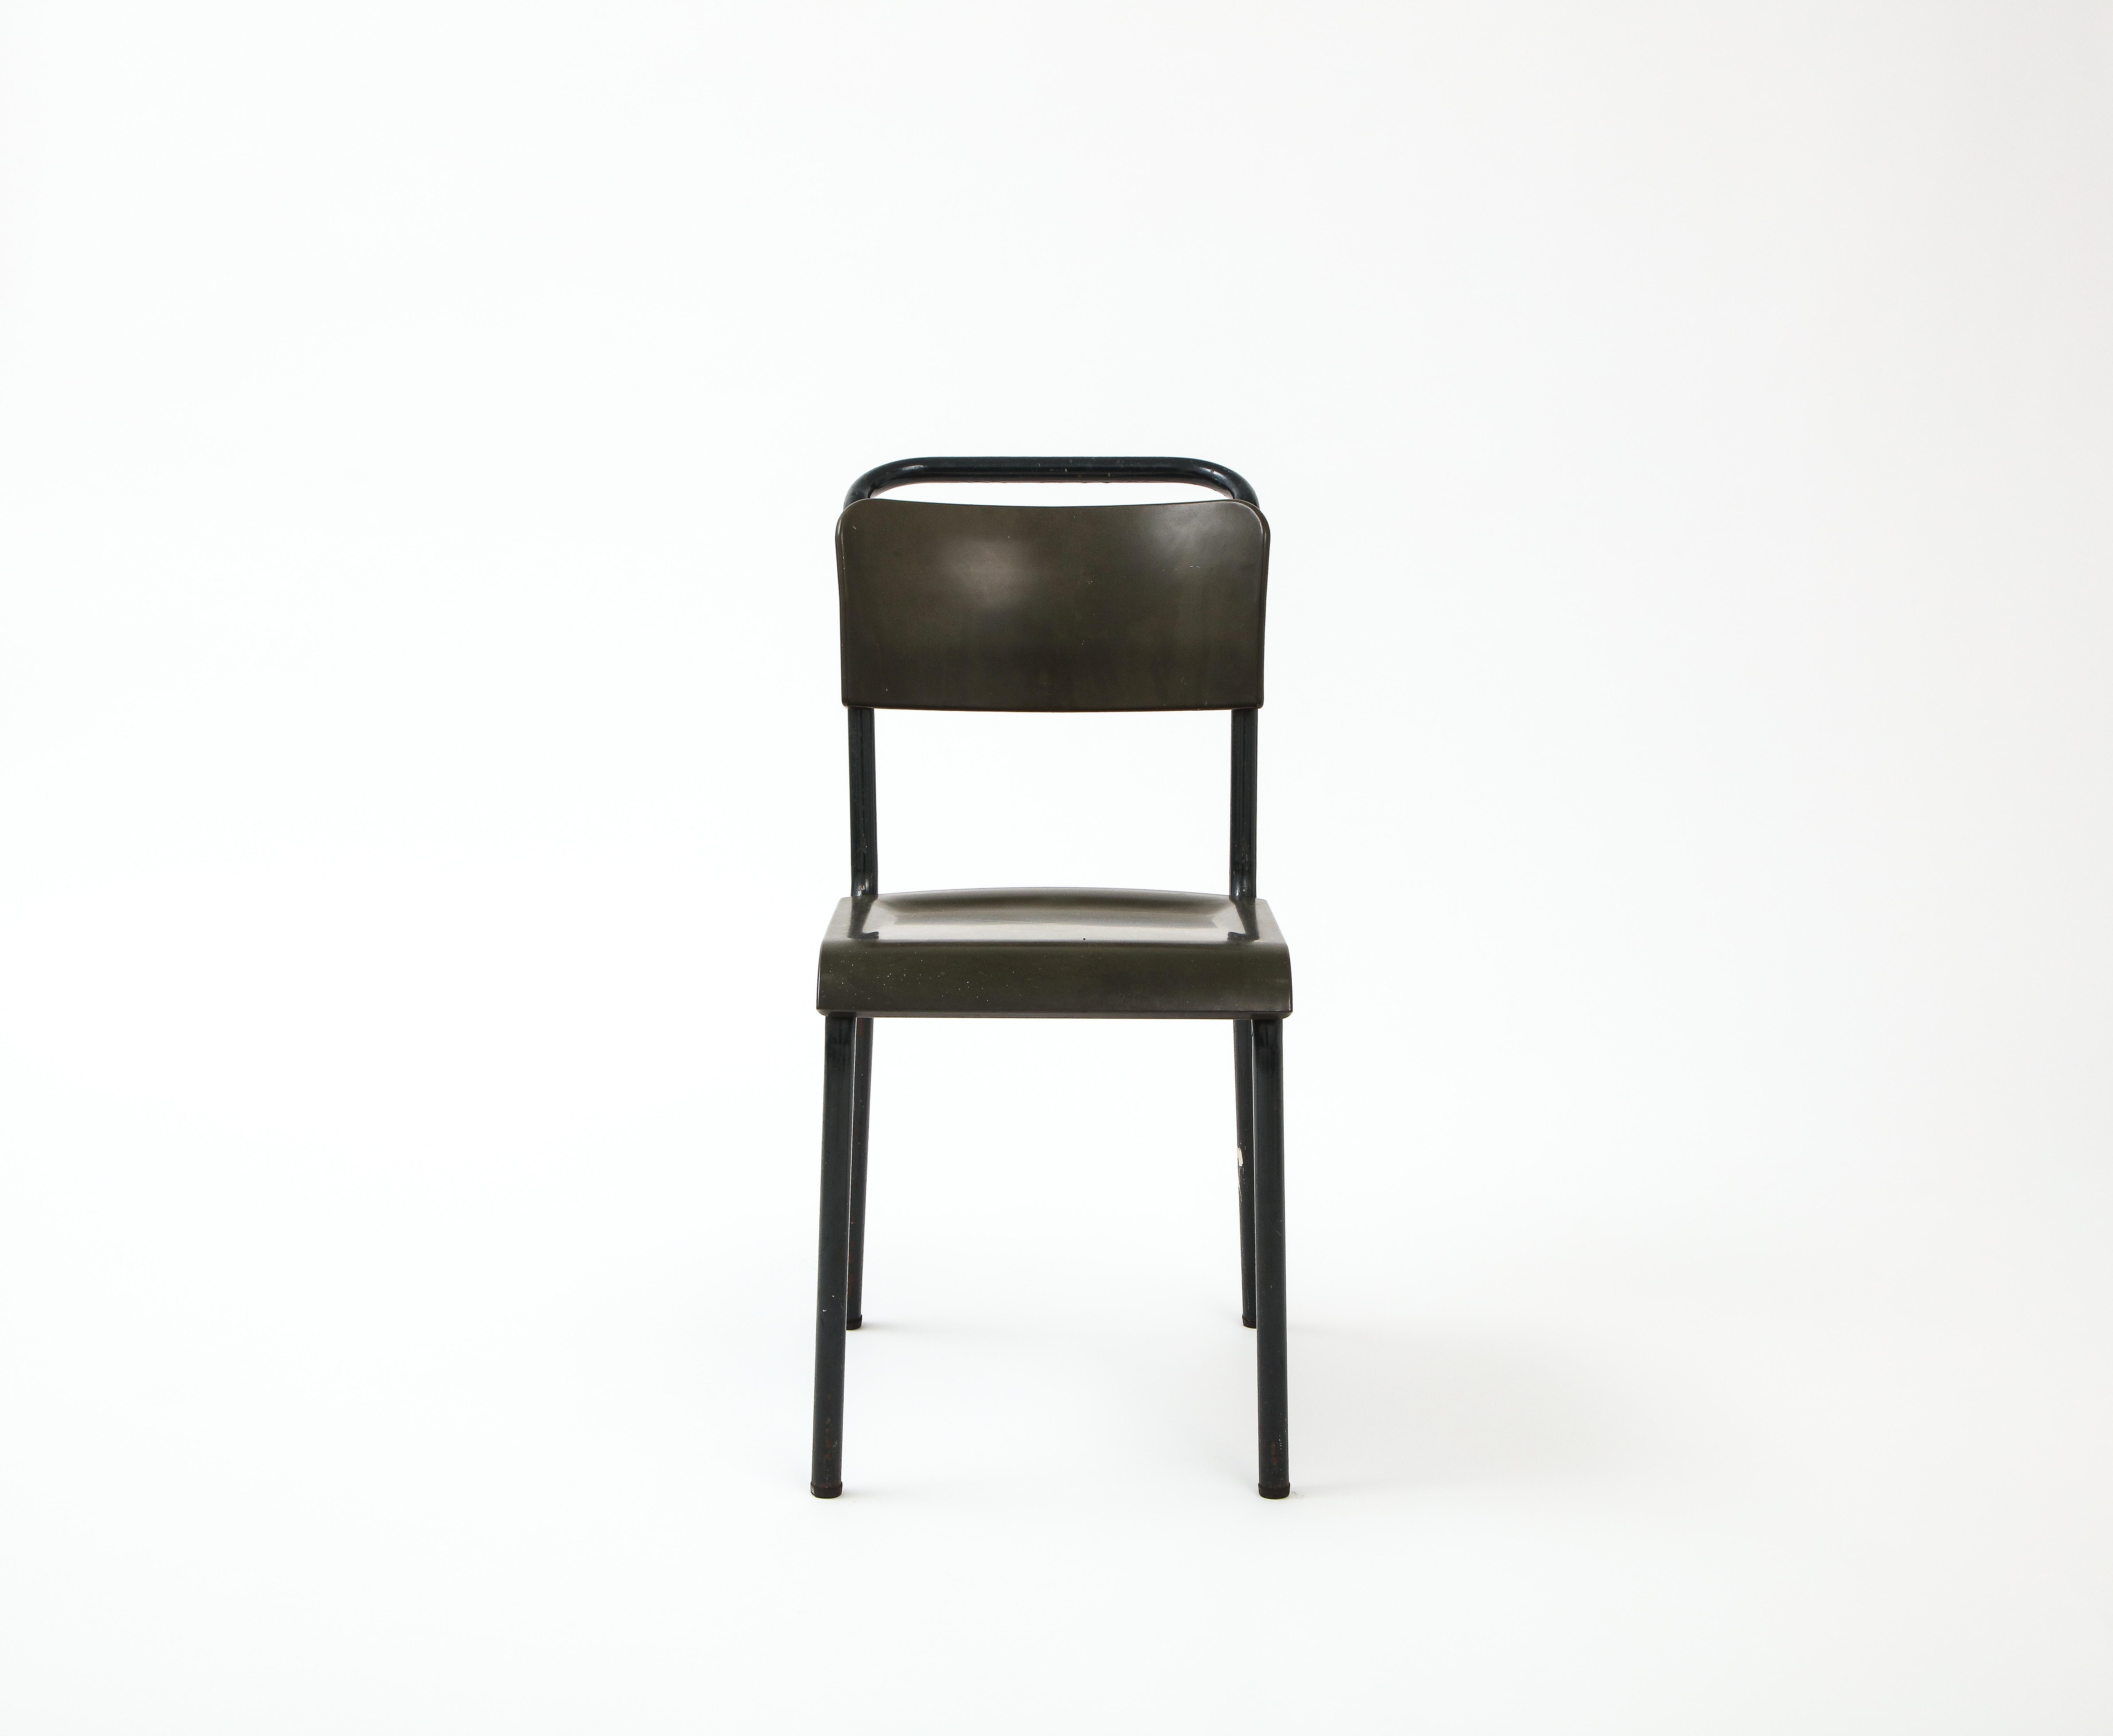 Exceptionnelle chaise d'appoint française du milieu du siècle dans le style de Pierre Guariche. 

Fabriqué en France dans les années 1950. Style industriel, fabriqué avec une structure en métal noir et une assise en bakélite.

Sa forme